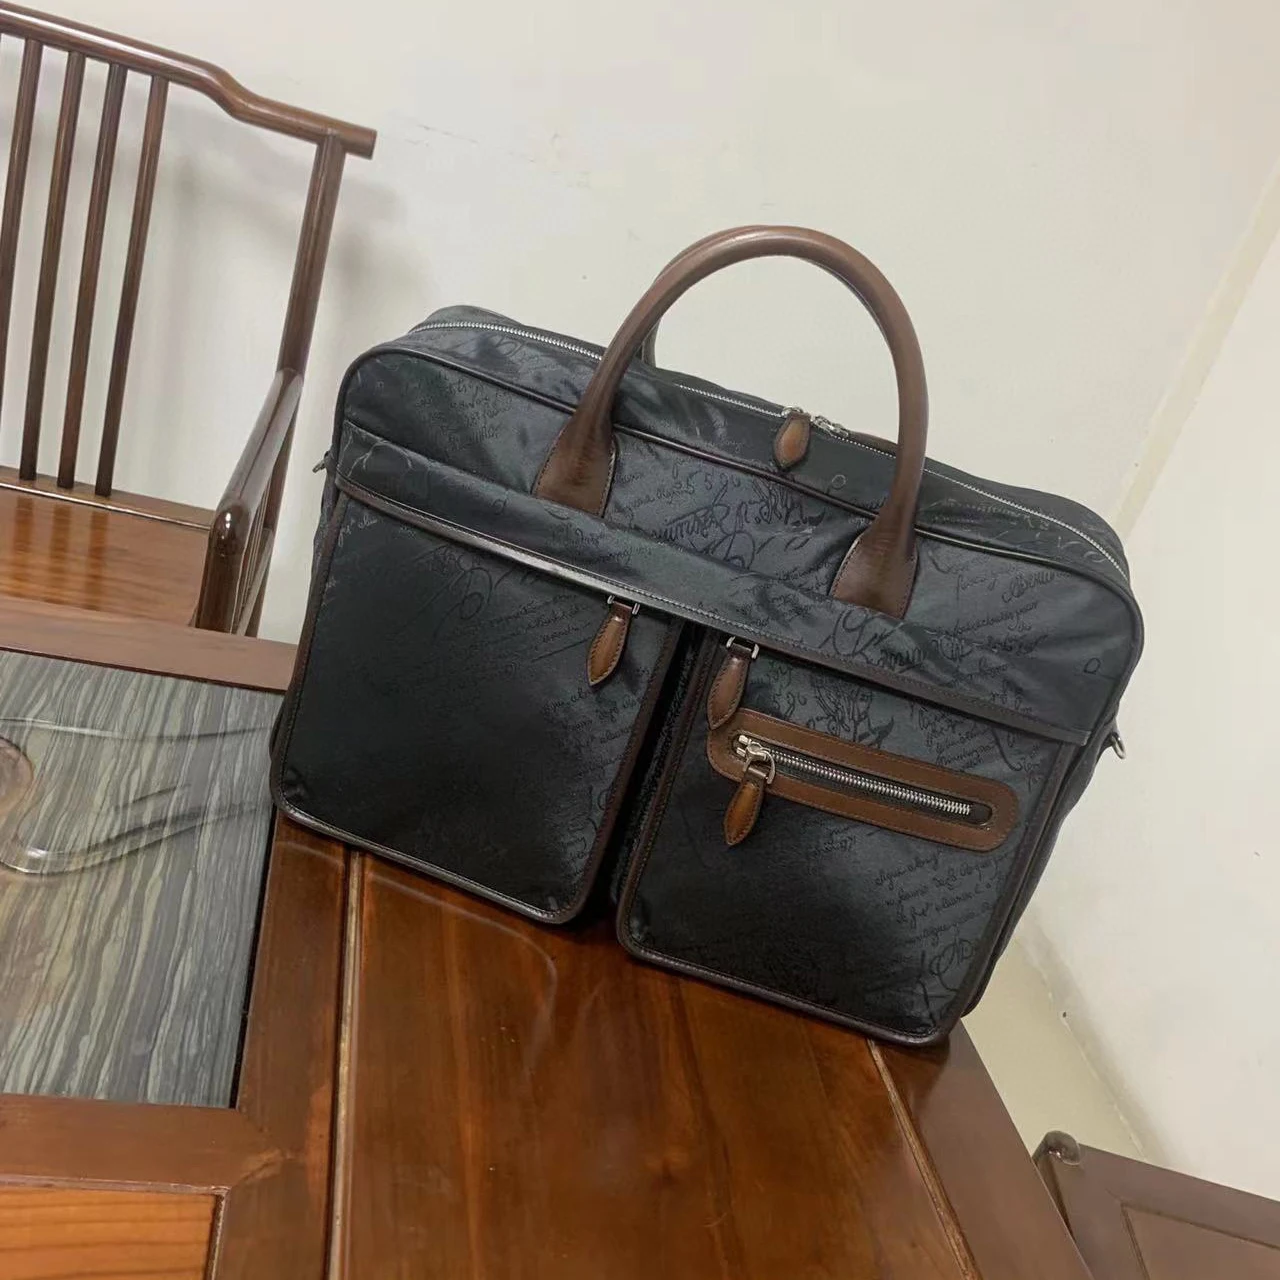 

SEETOO Nylon Jacquard Scritto Leather Travel Bag With Shoulder Strap Messenger Bag Men's Bag Ladies Handbag Briefcase